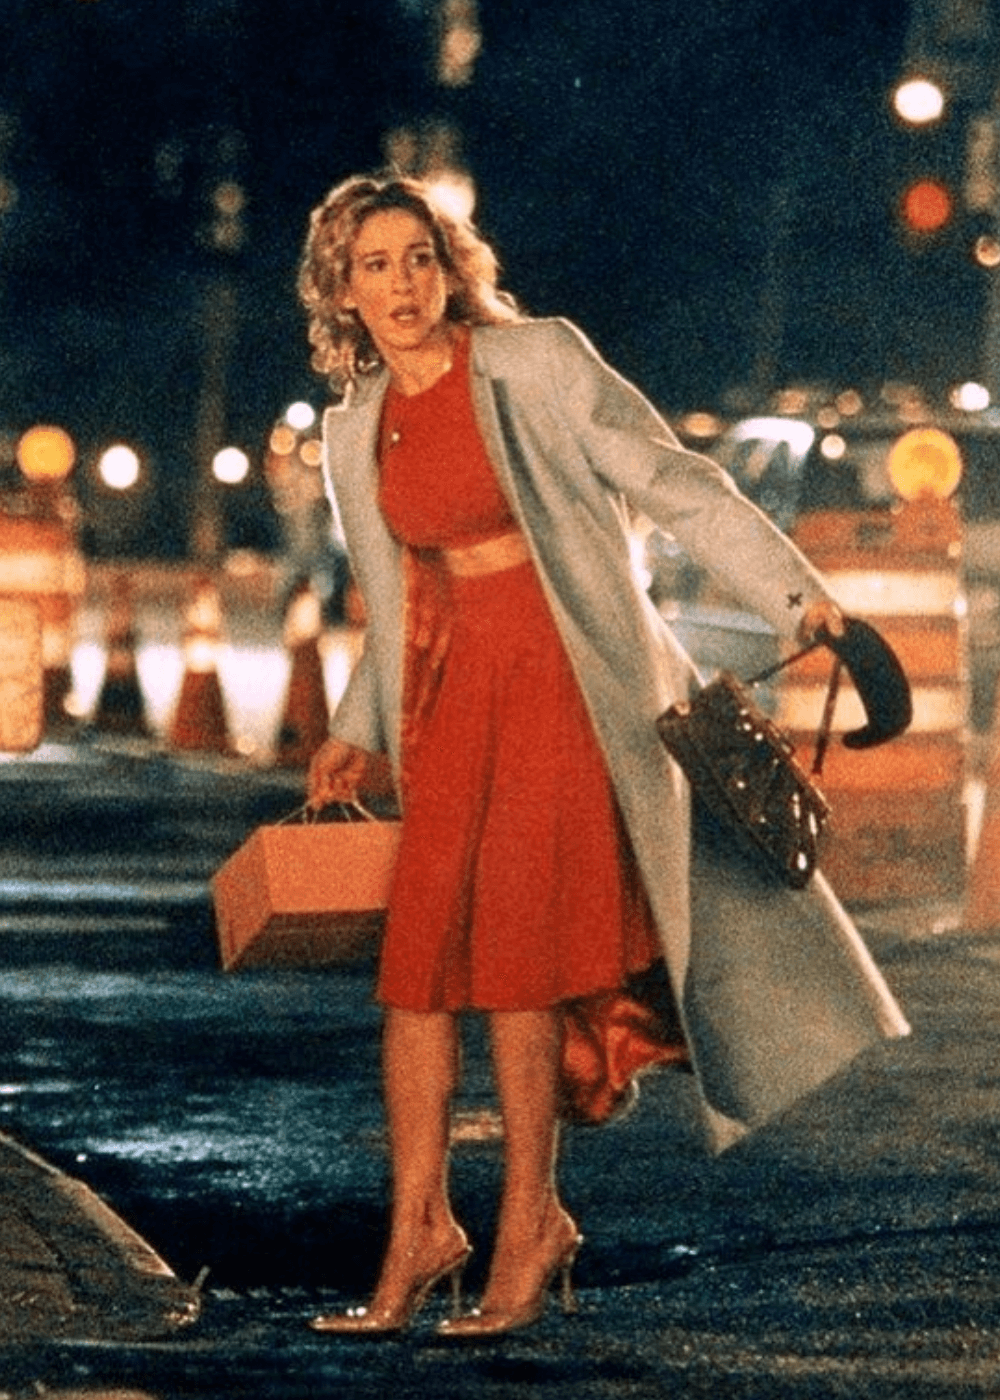 Sarah Jessica Parker - conjunto vermelho de saia e cropped e casaco - Carrie Bradshaw - outono - mulher andando na rua - https://stealthelook.com.br